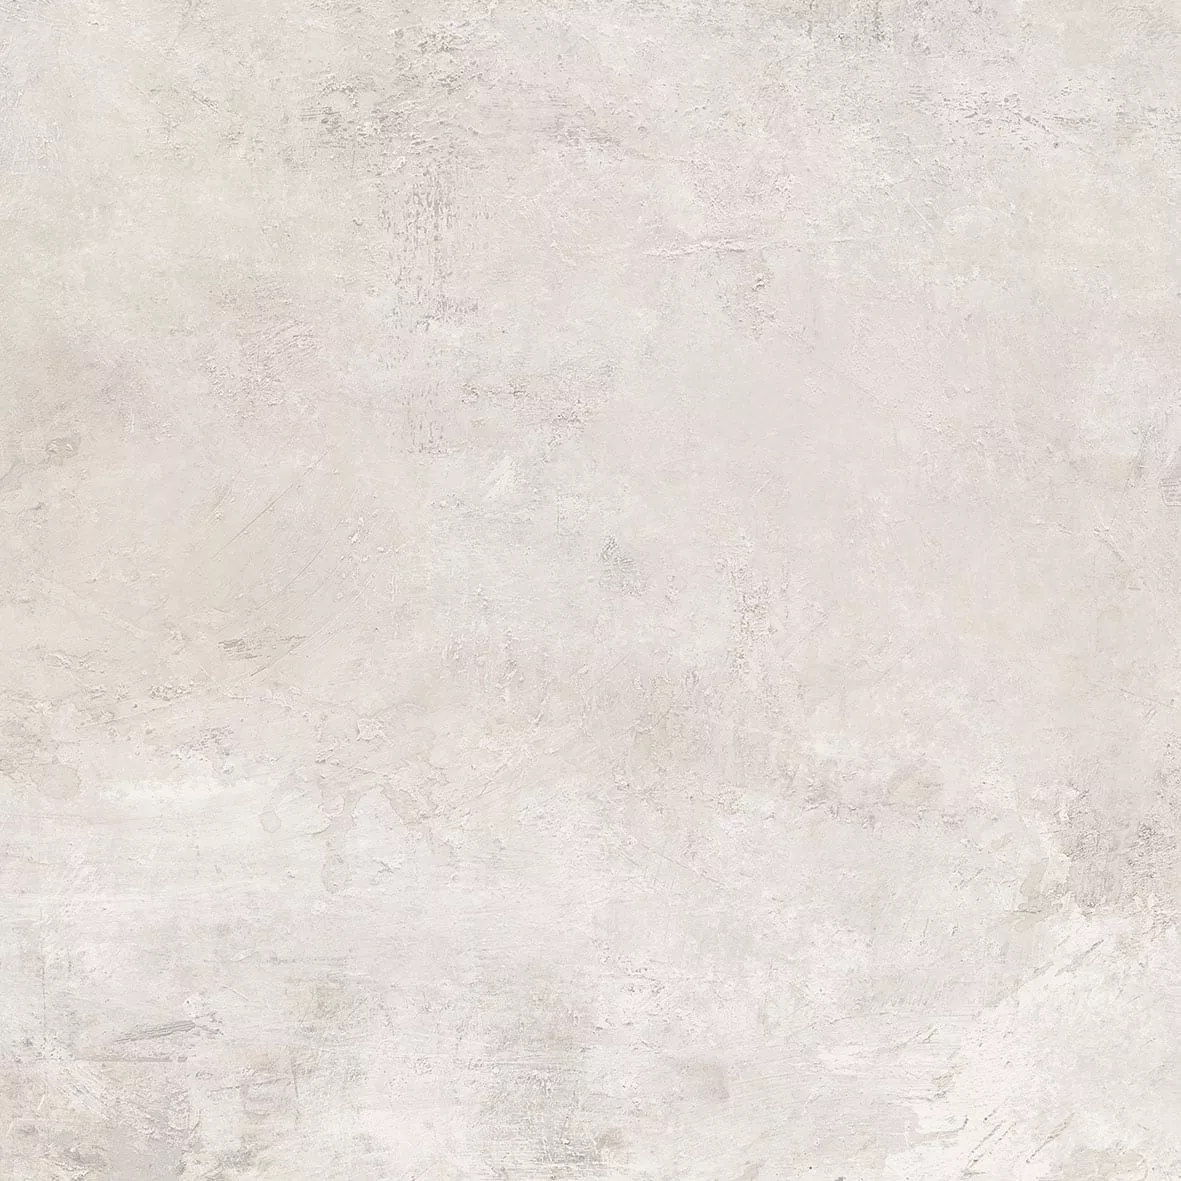 Gresie portelanata, 59 × 59 cm, bej, Colosseum, Cesarom